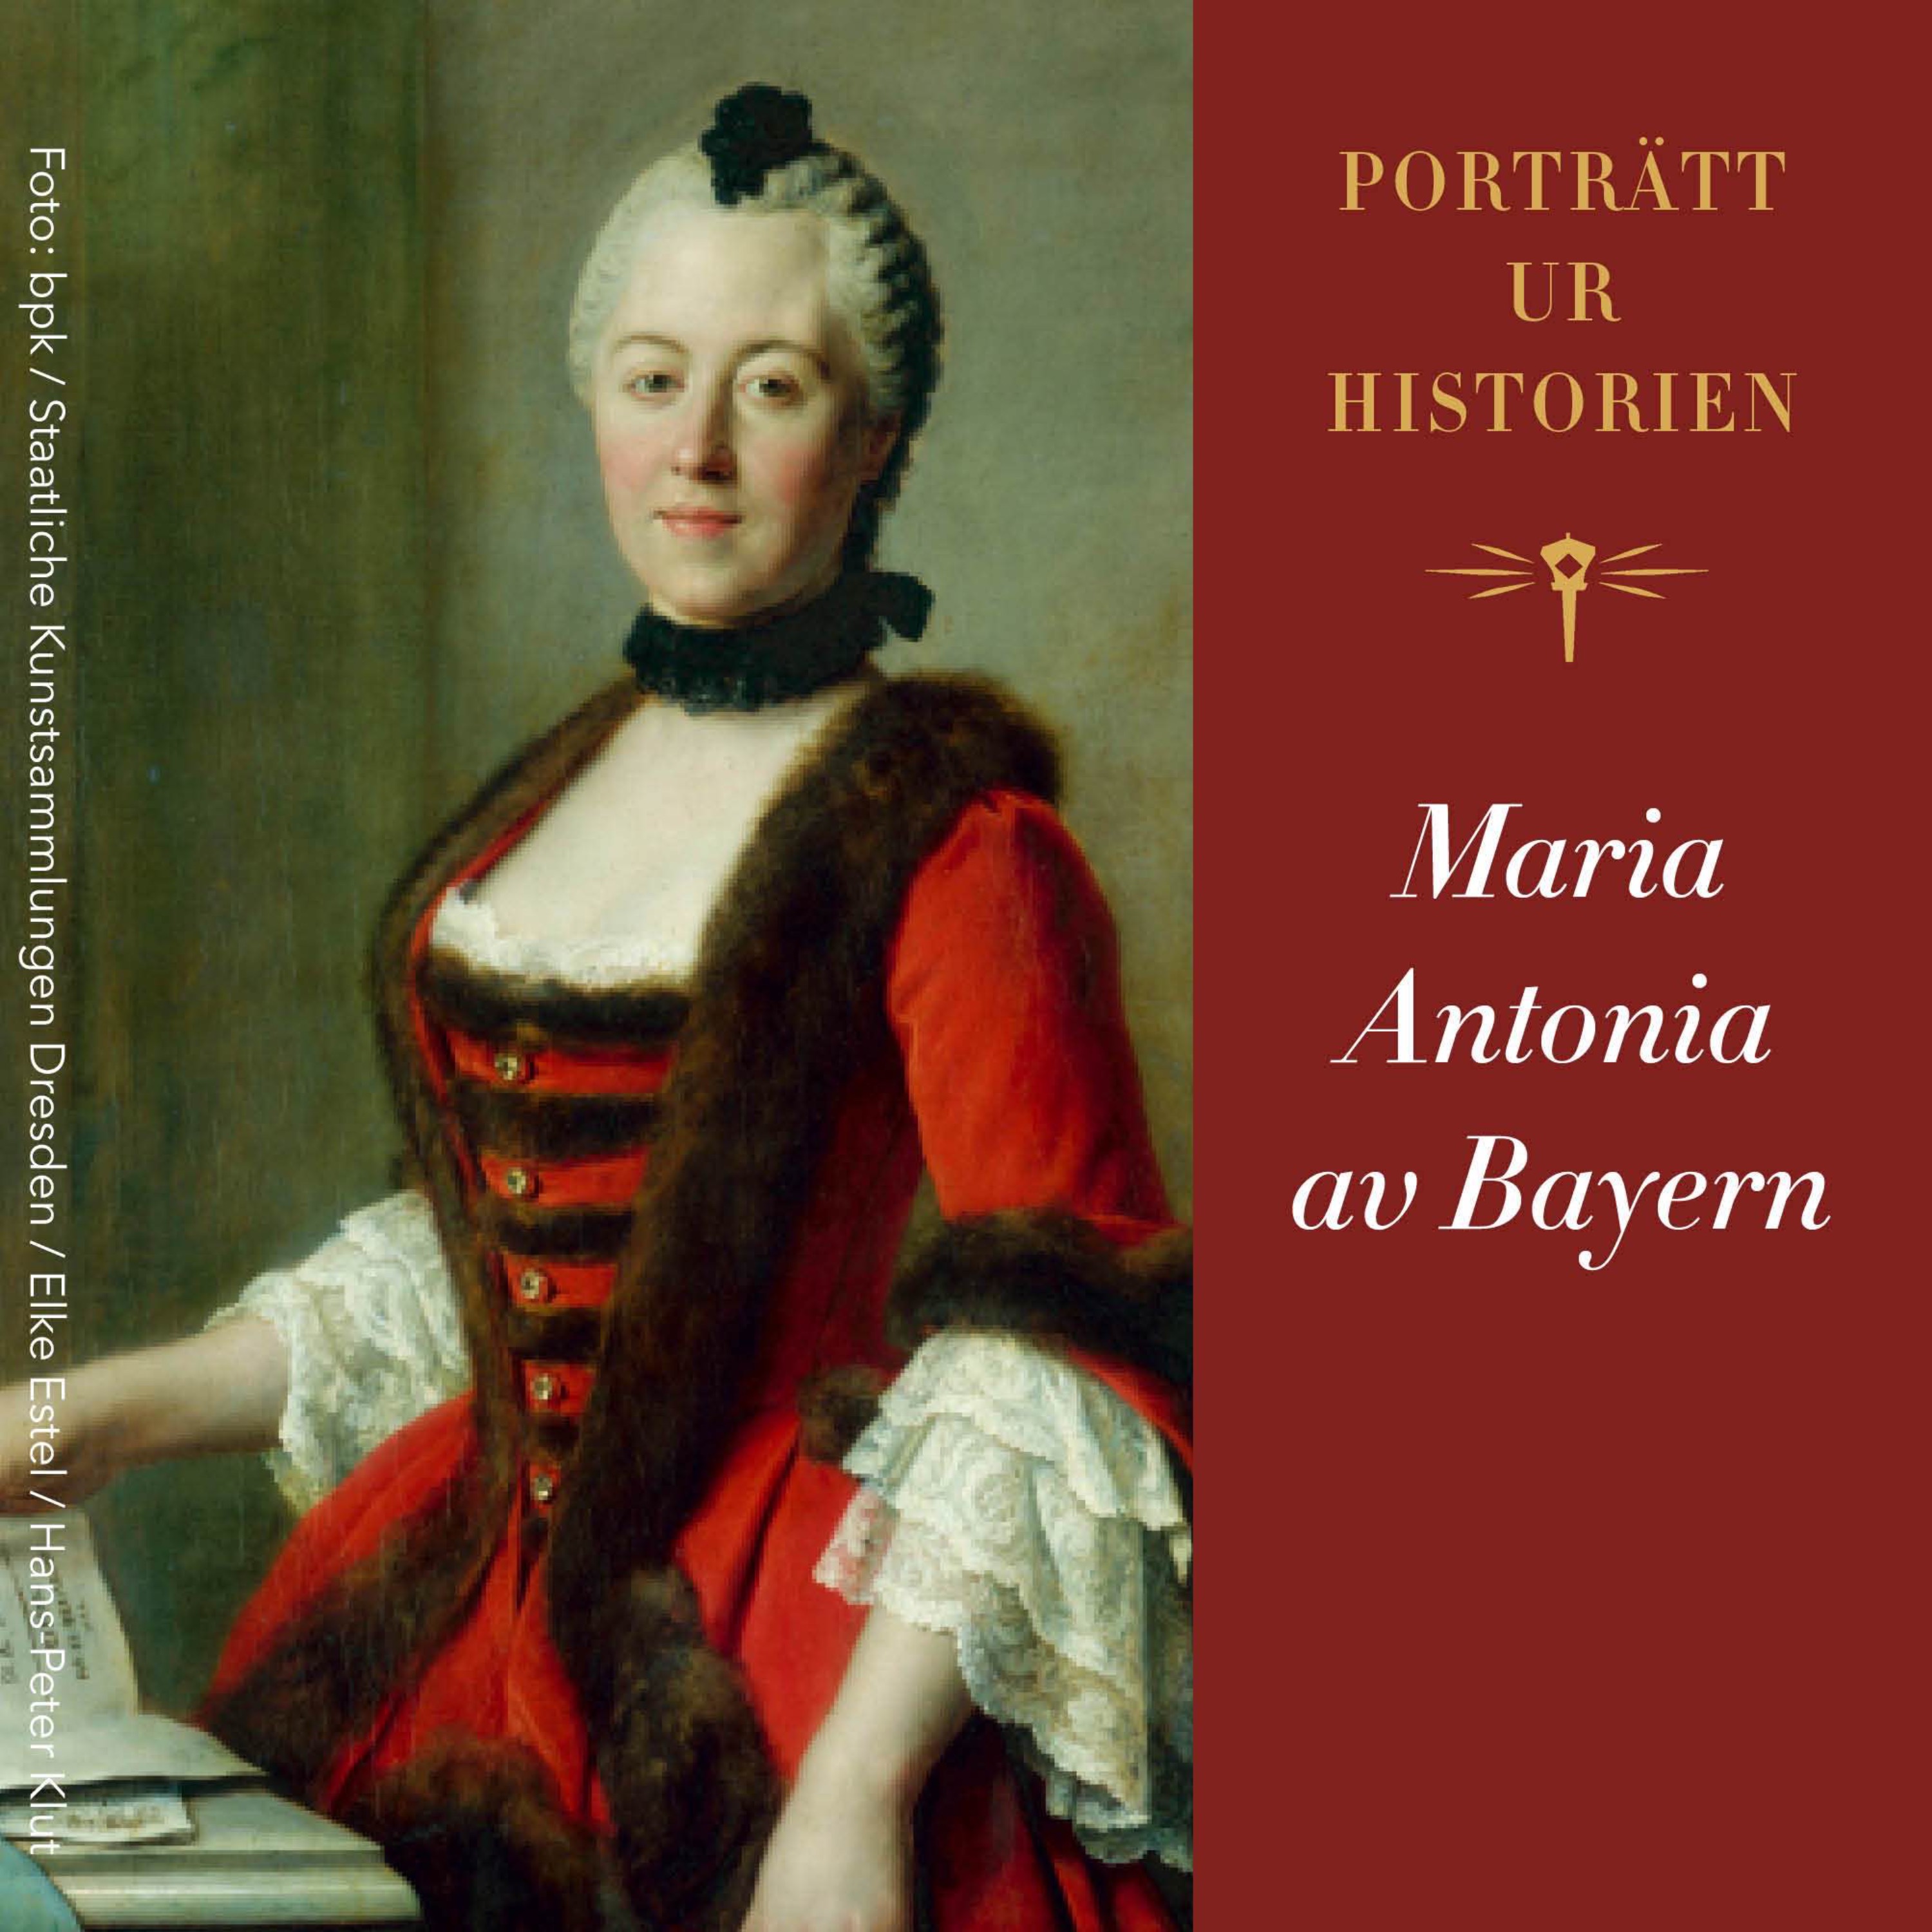 Porträtt ur historien: Maria Antonia av Bayern